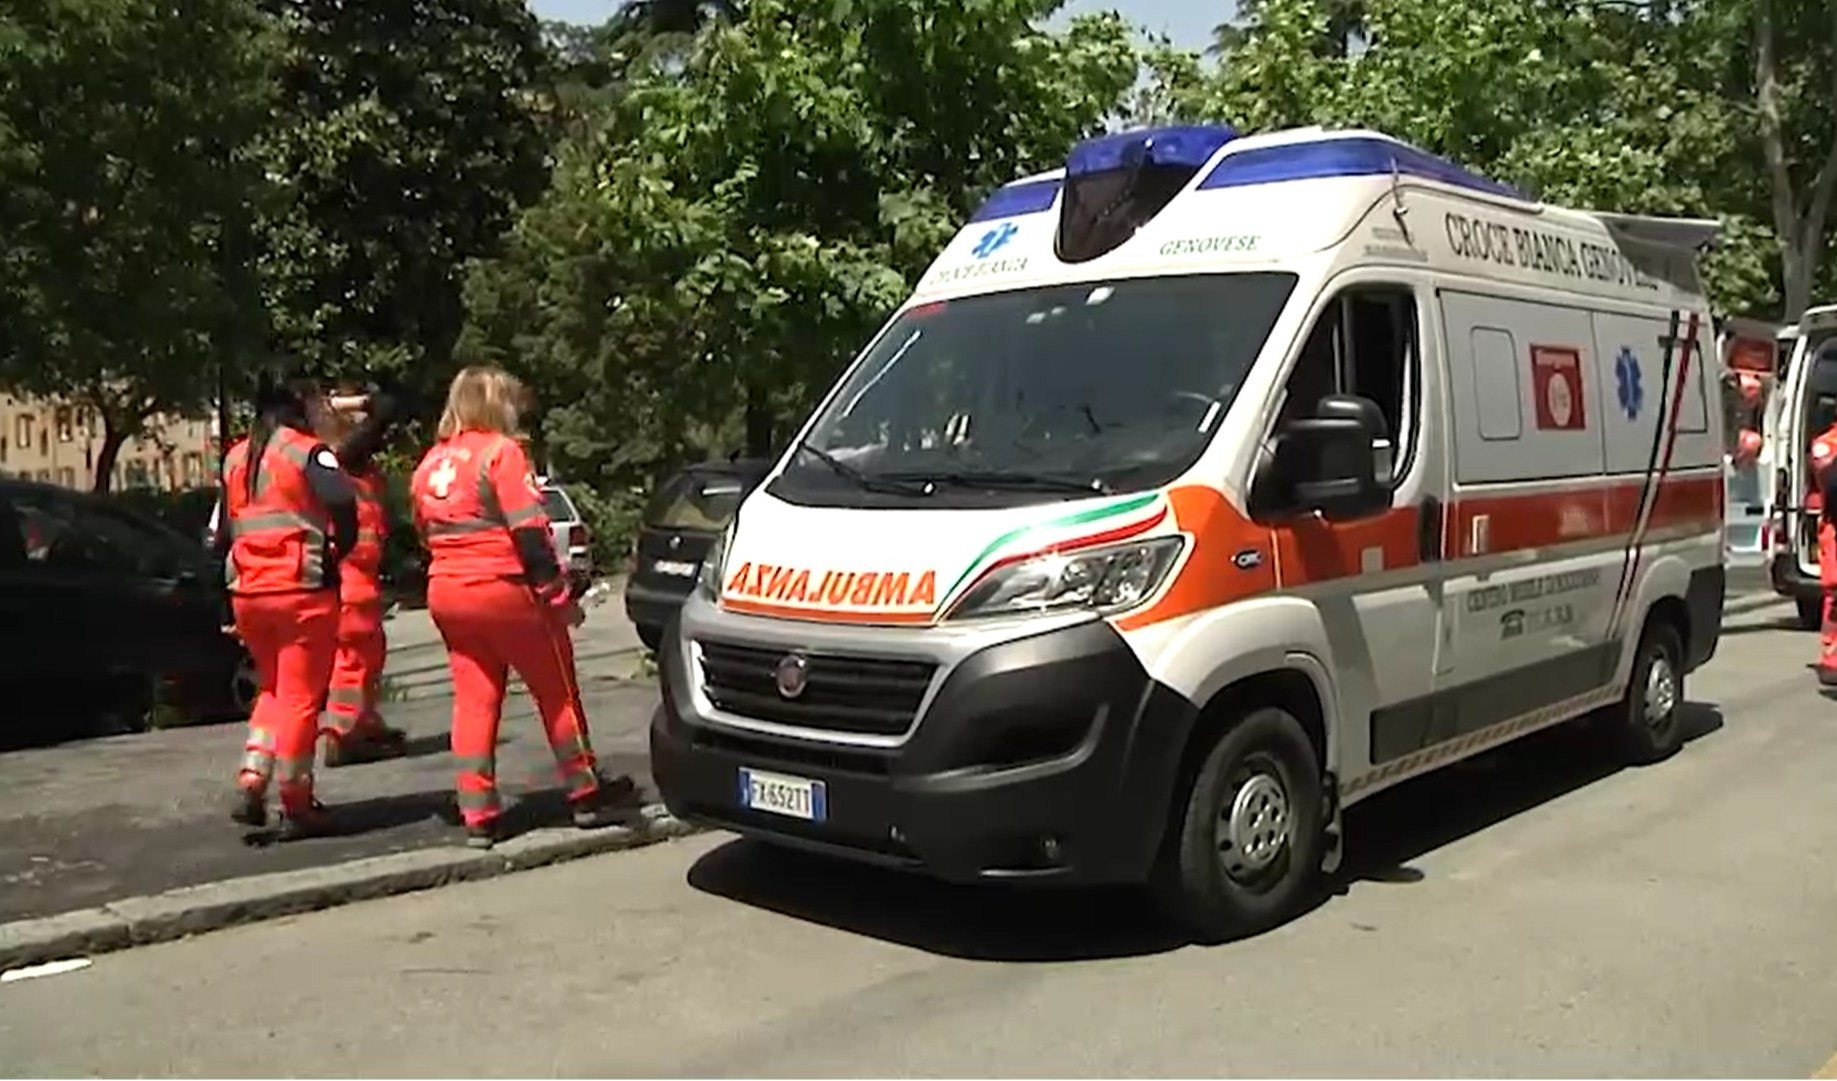 Raffica di incidenti in Liguria, ciclista contro camion e caduta sul Bracco: 2 feriti gravi